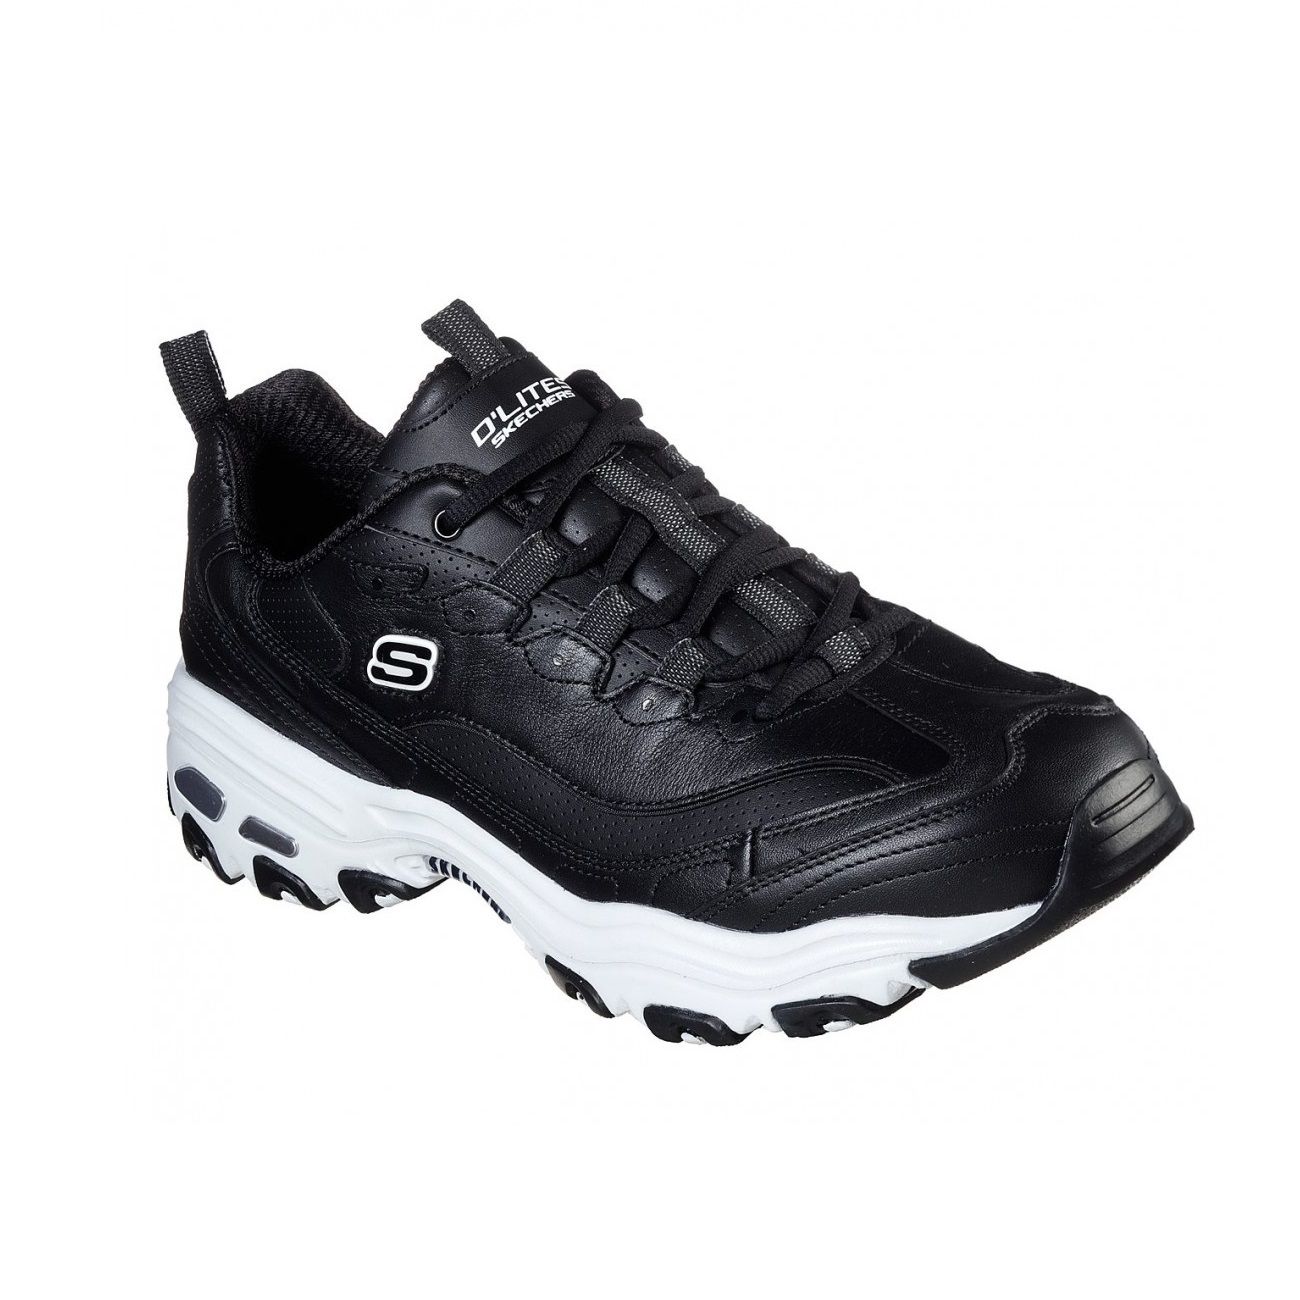 کفش مخصوص پیاده روی مردانه اسکچرز مدل RS 51888 bkw -  - 8